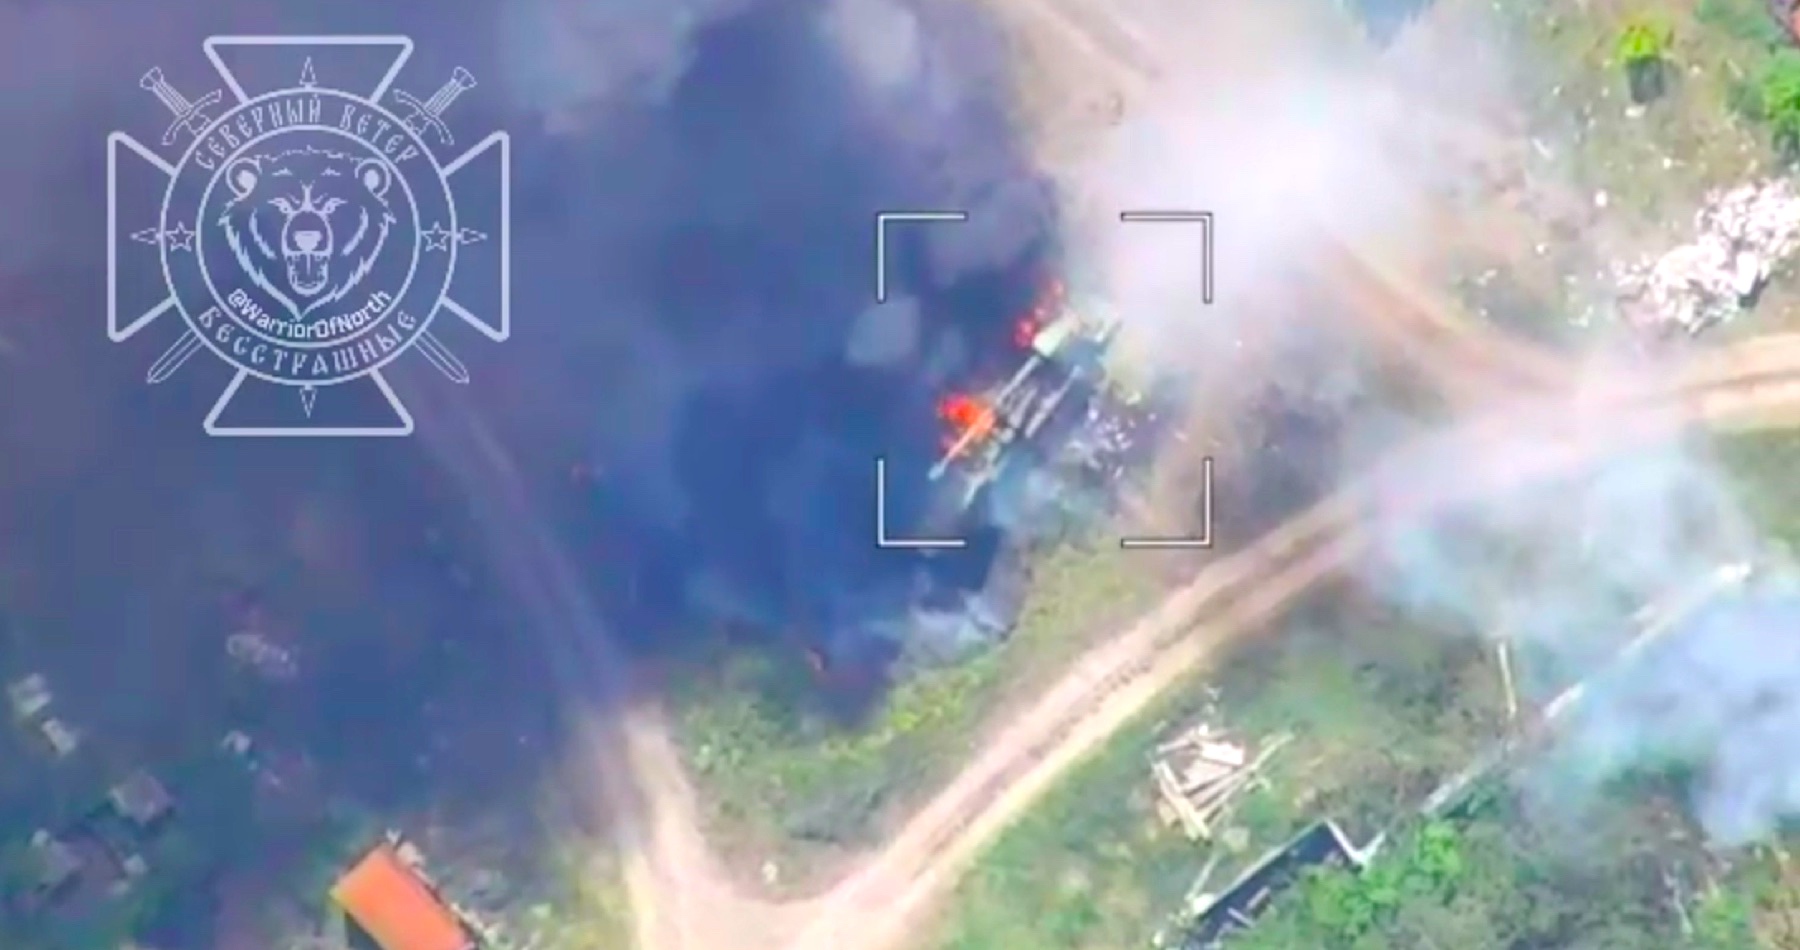 VIDEO: Ruské drony likvidujú ukrajinskej armáde samohybné húfnice